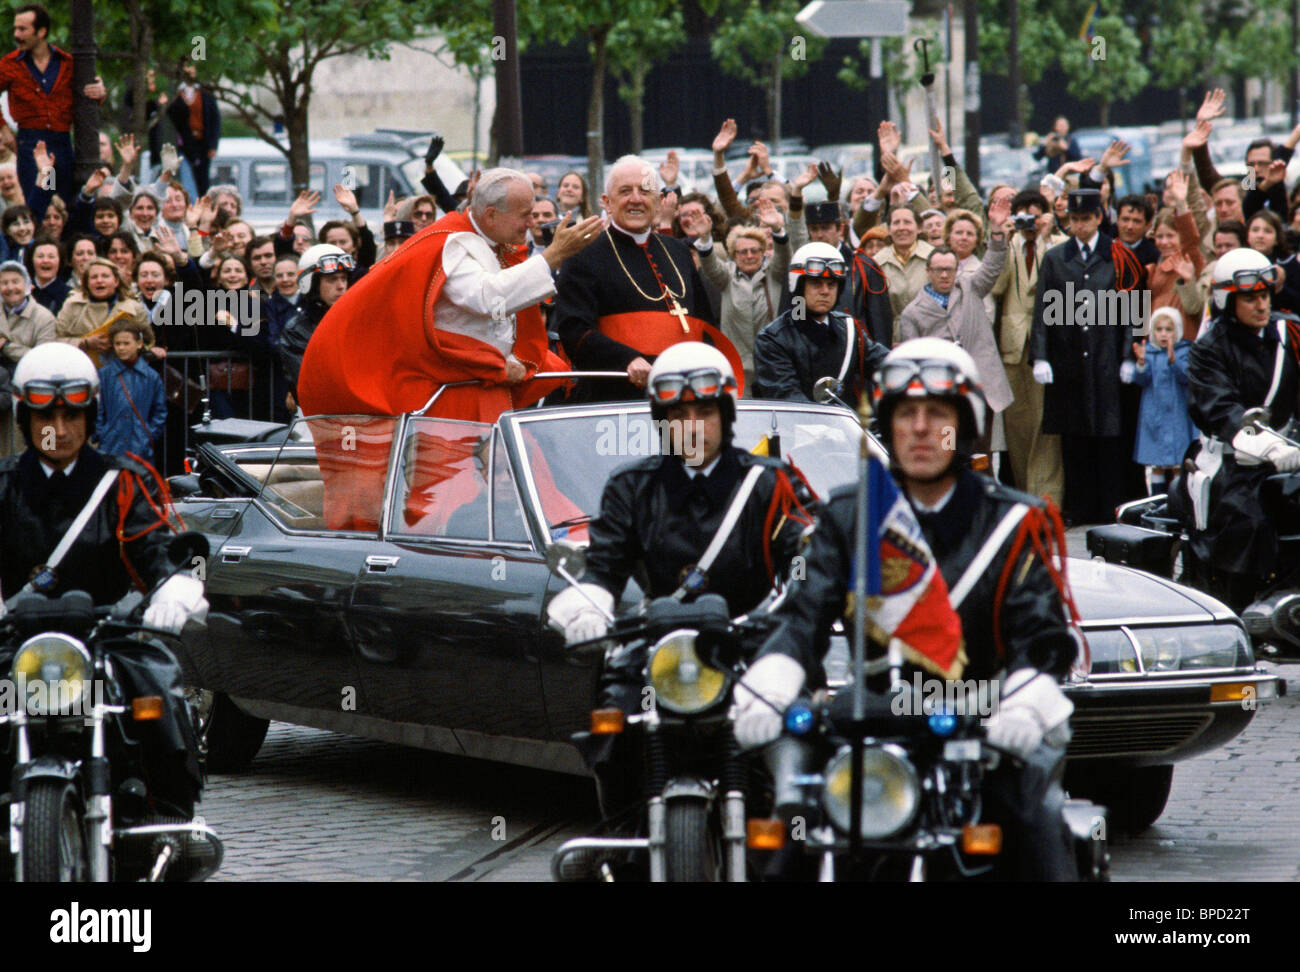 La police voiture décapotable précurseurs un minimum de sécurité pour le Pape Jean Paul II en agitant à la foule à Paris en visite officielle en France Banque D'Images